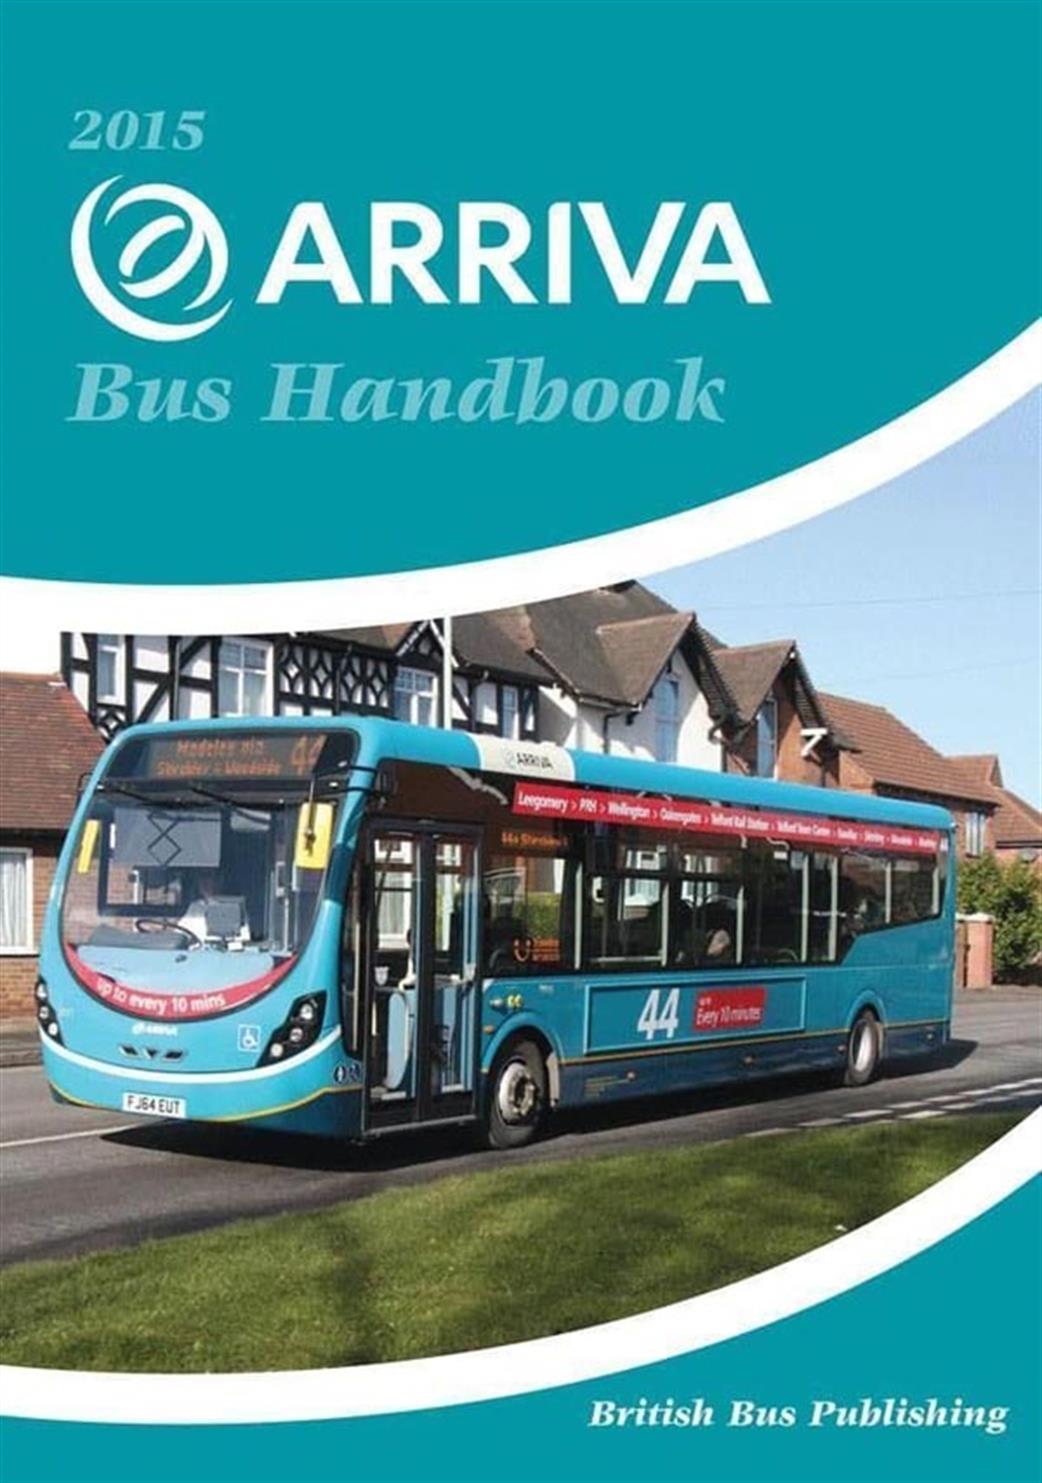 British Bus Publishing  9781904875338 Arriva Bus Handbook 2015